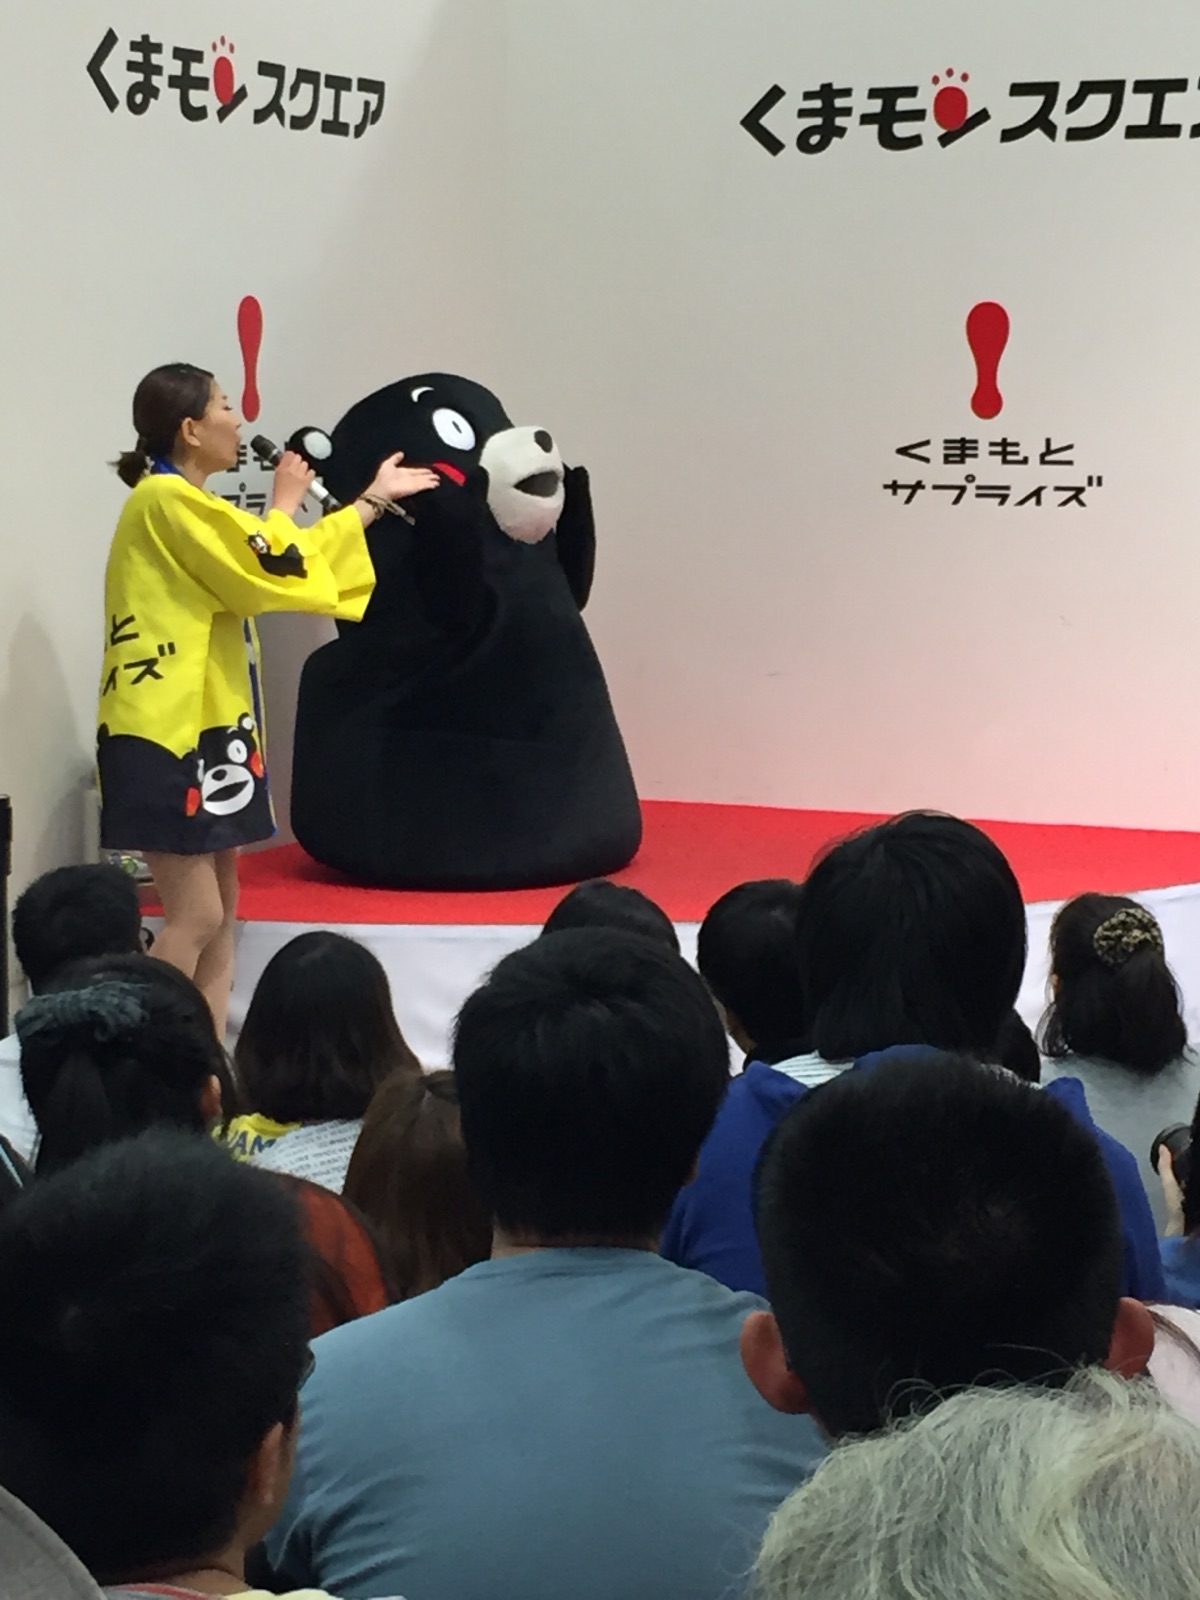 日本人对于吉祥物的营造真的是太厉害了，kumamon作为营业部长以来给